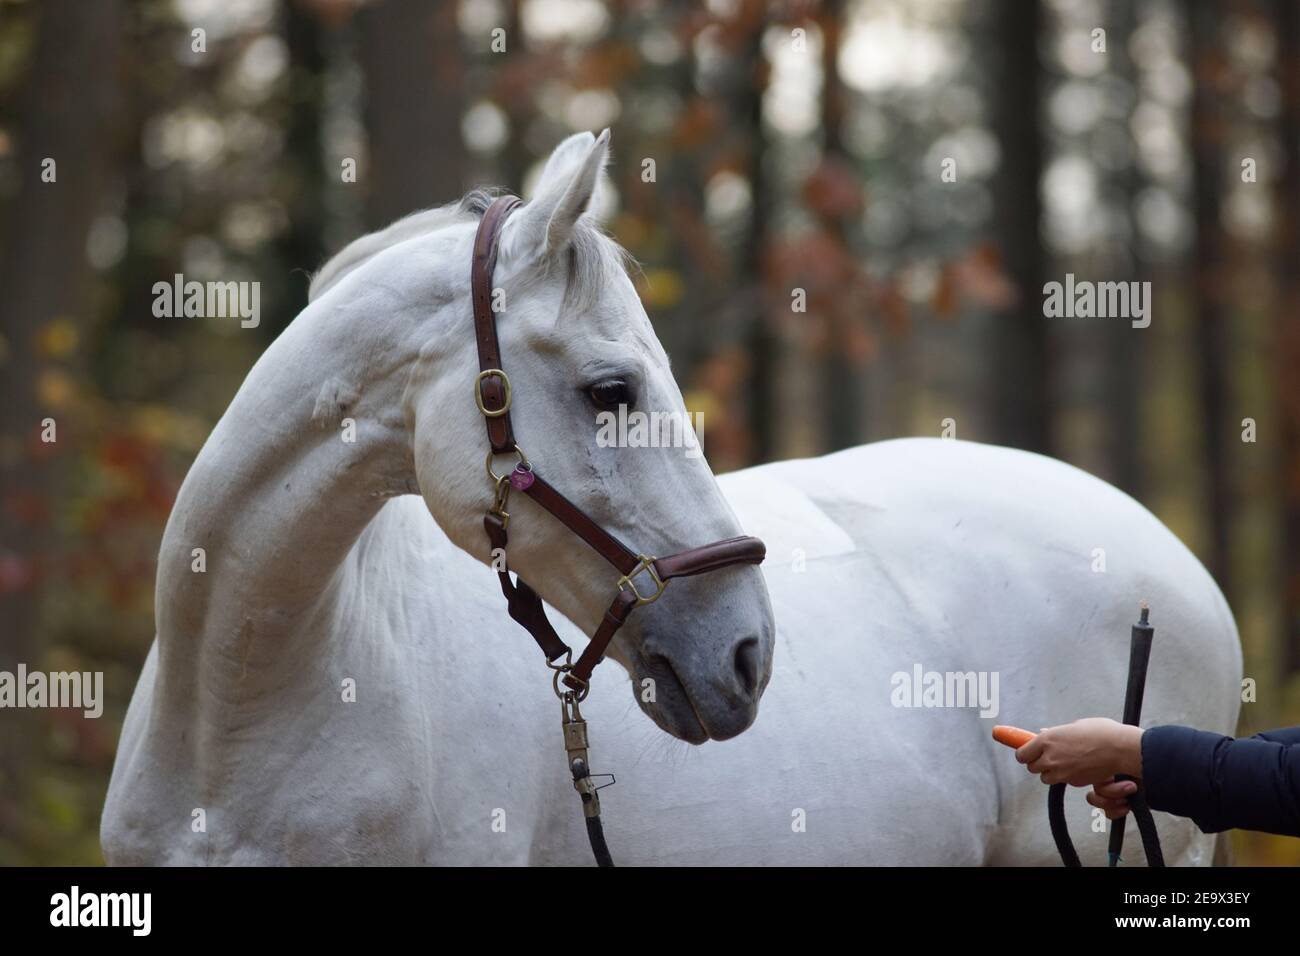 un cheval blanc et une main avec une carotte, faisant le travail de terrain pour la relation et la confiance Banque D'Images